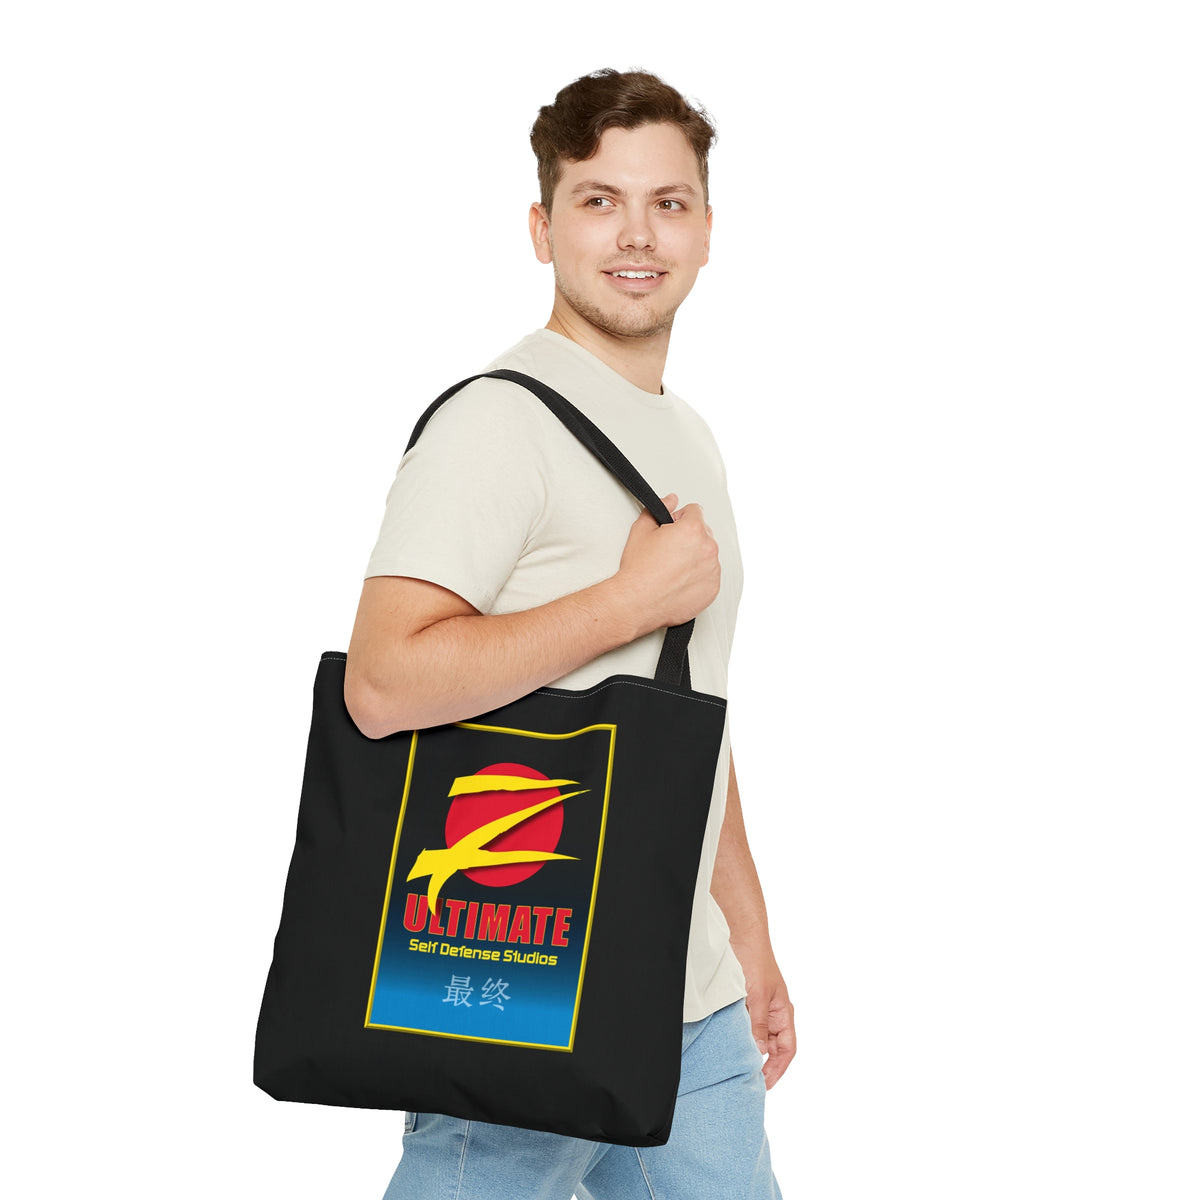 Z-Ultimate Tote Bag - Black